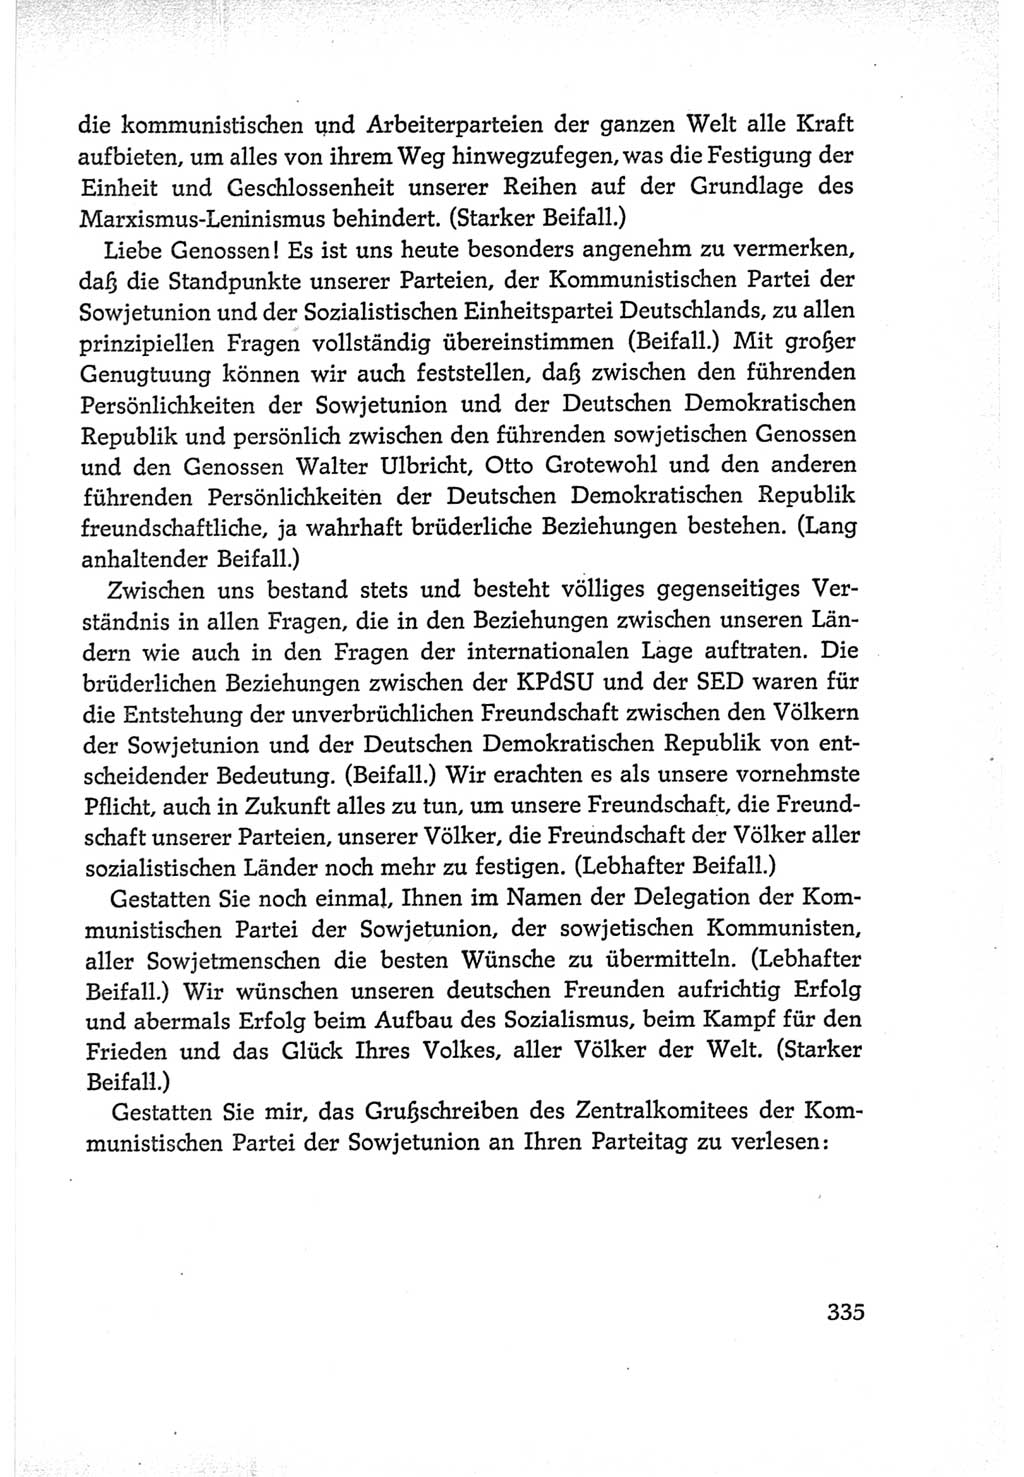 Protokoll der Verhandlungen des Ⅵ. Parteitages der Sozialistischen Einheitspartei Deutschlands (SED) [Deutsche Demokratische Republik (DDR)] 1963, Band Ⅰ, Seite 335 (Prot. Verh. Ⅵ. PT SED DDR 1963, Bd. Ⅰ, S. 335)